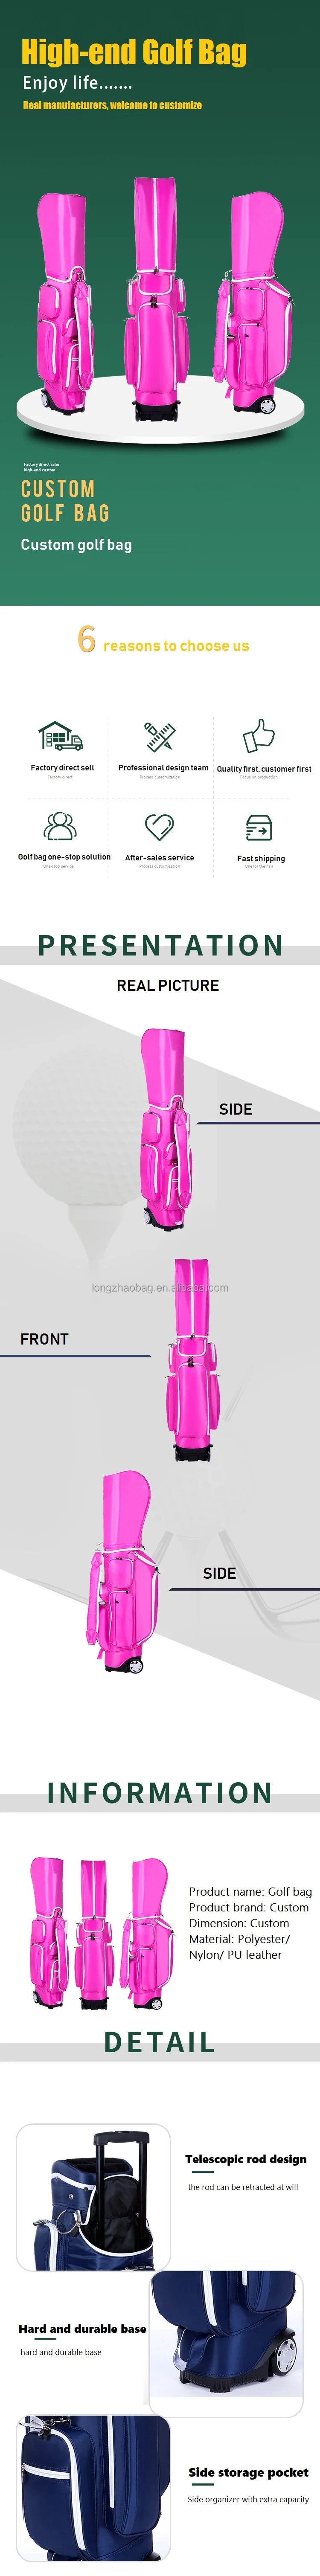 Golf air bag6.jpg